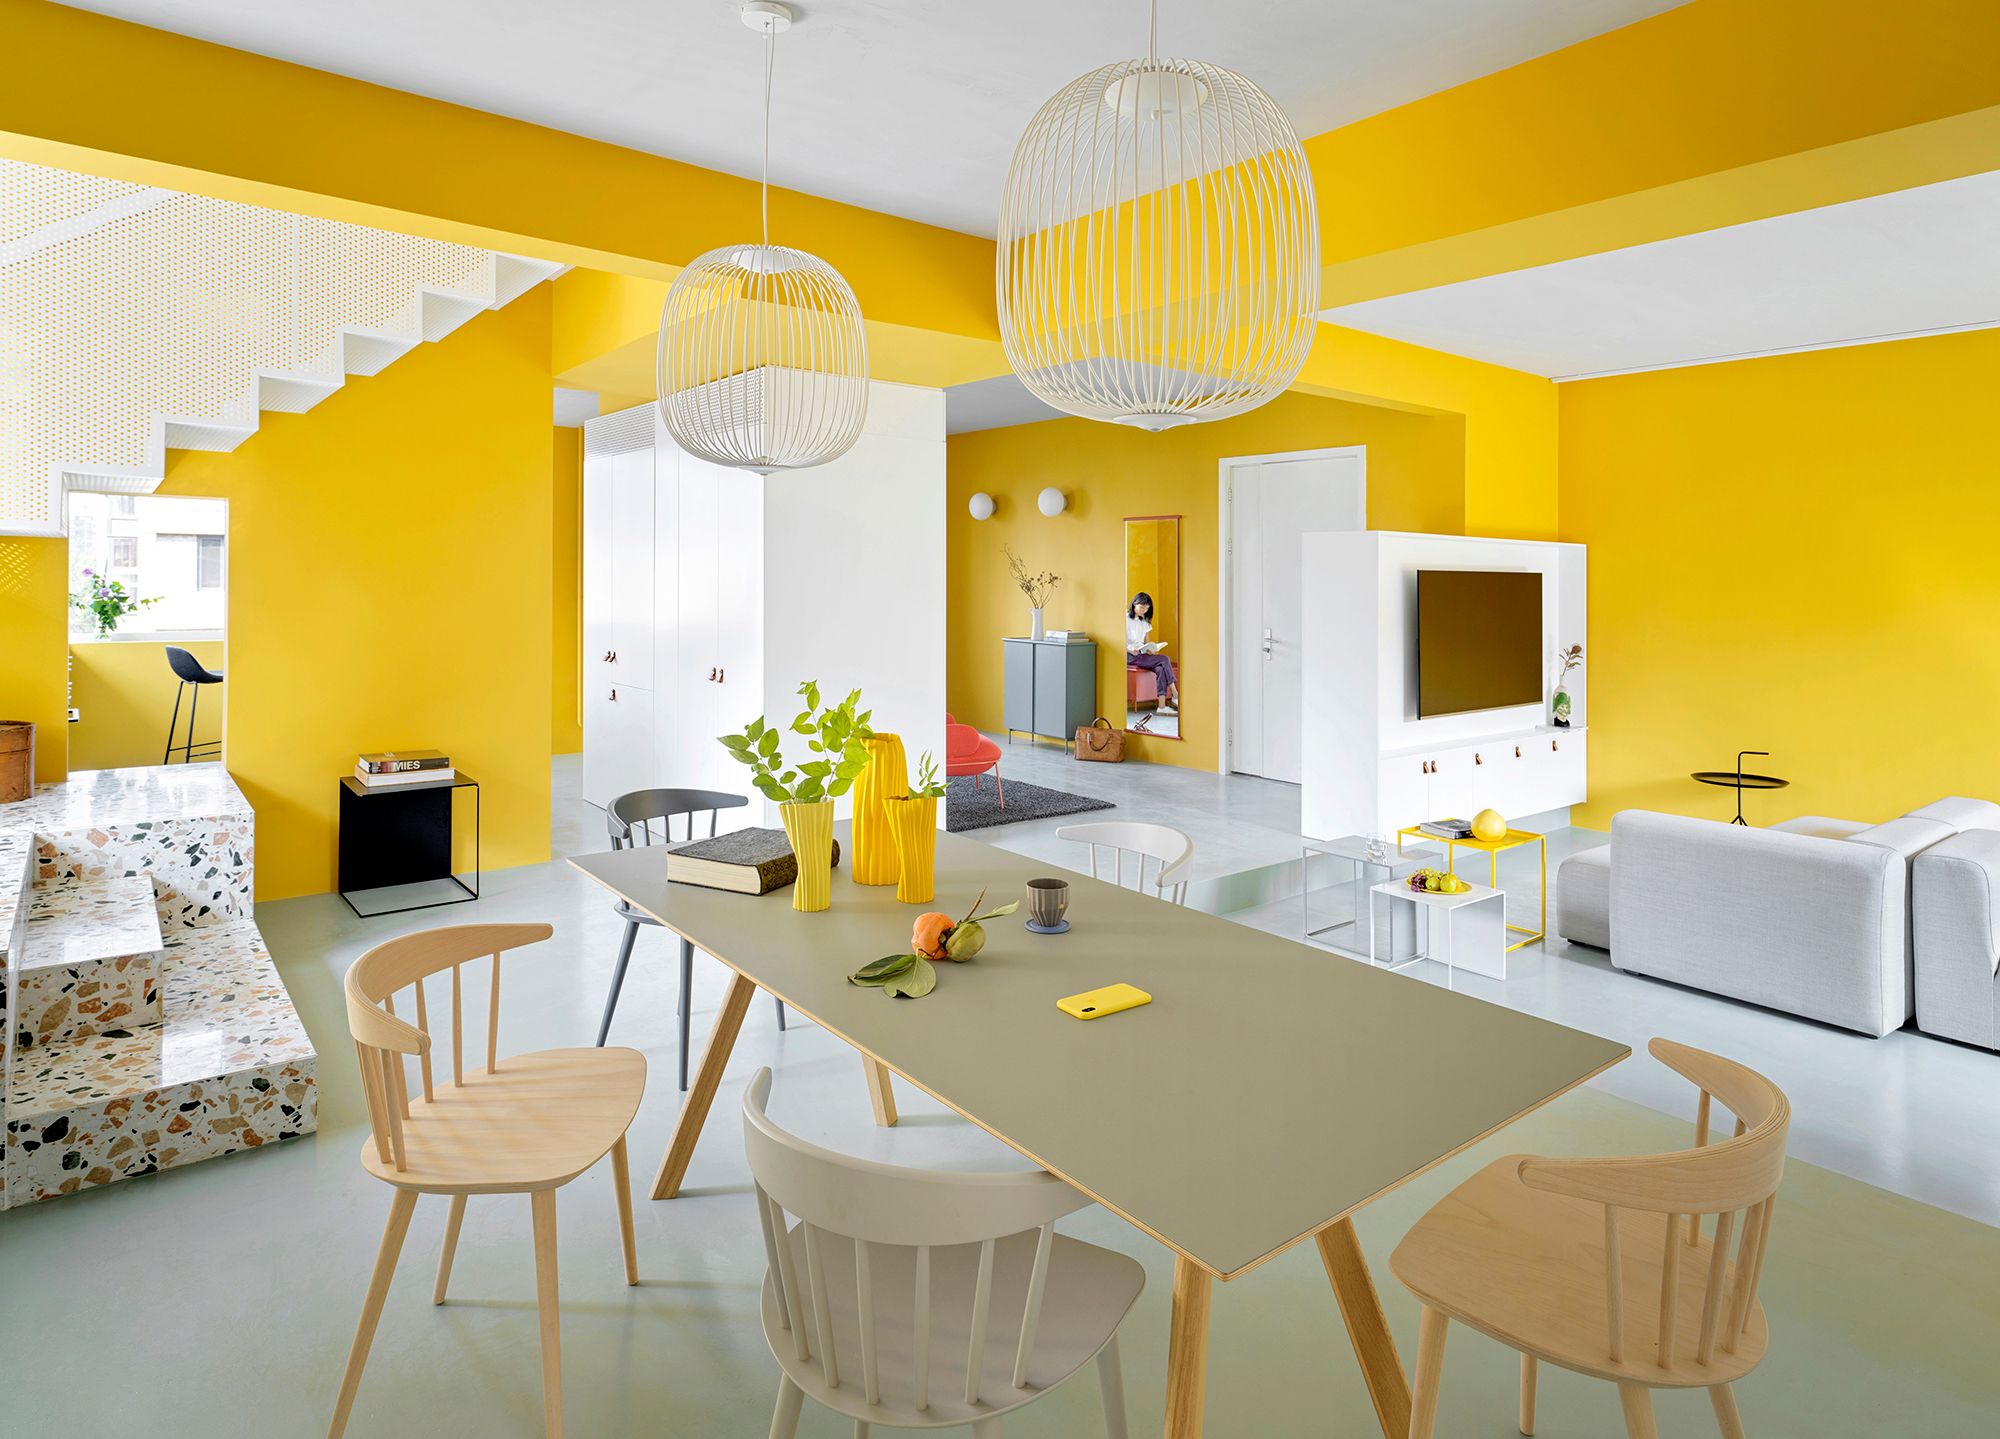 Descubrir 75+ imagen casas pintadas de amarillo